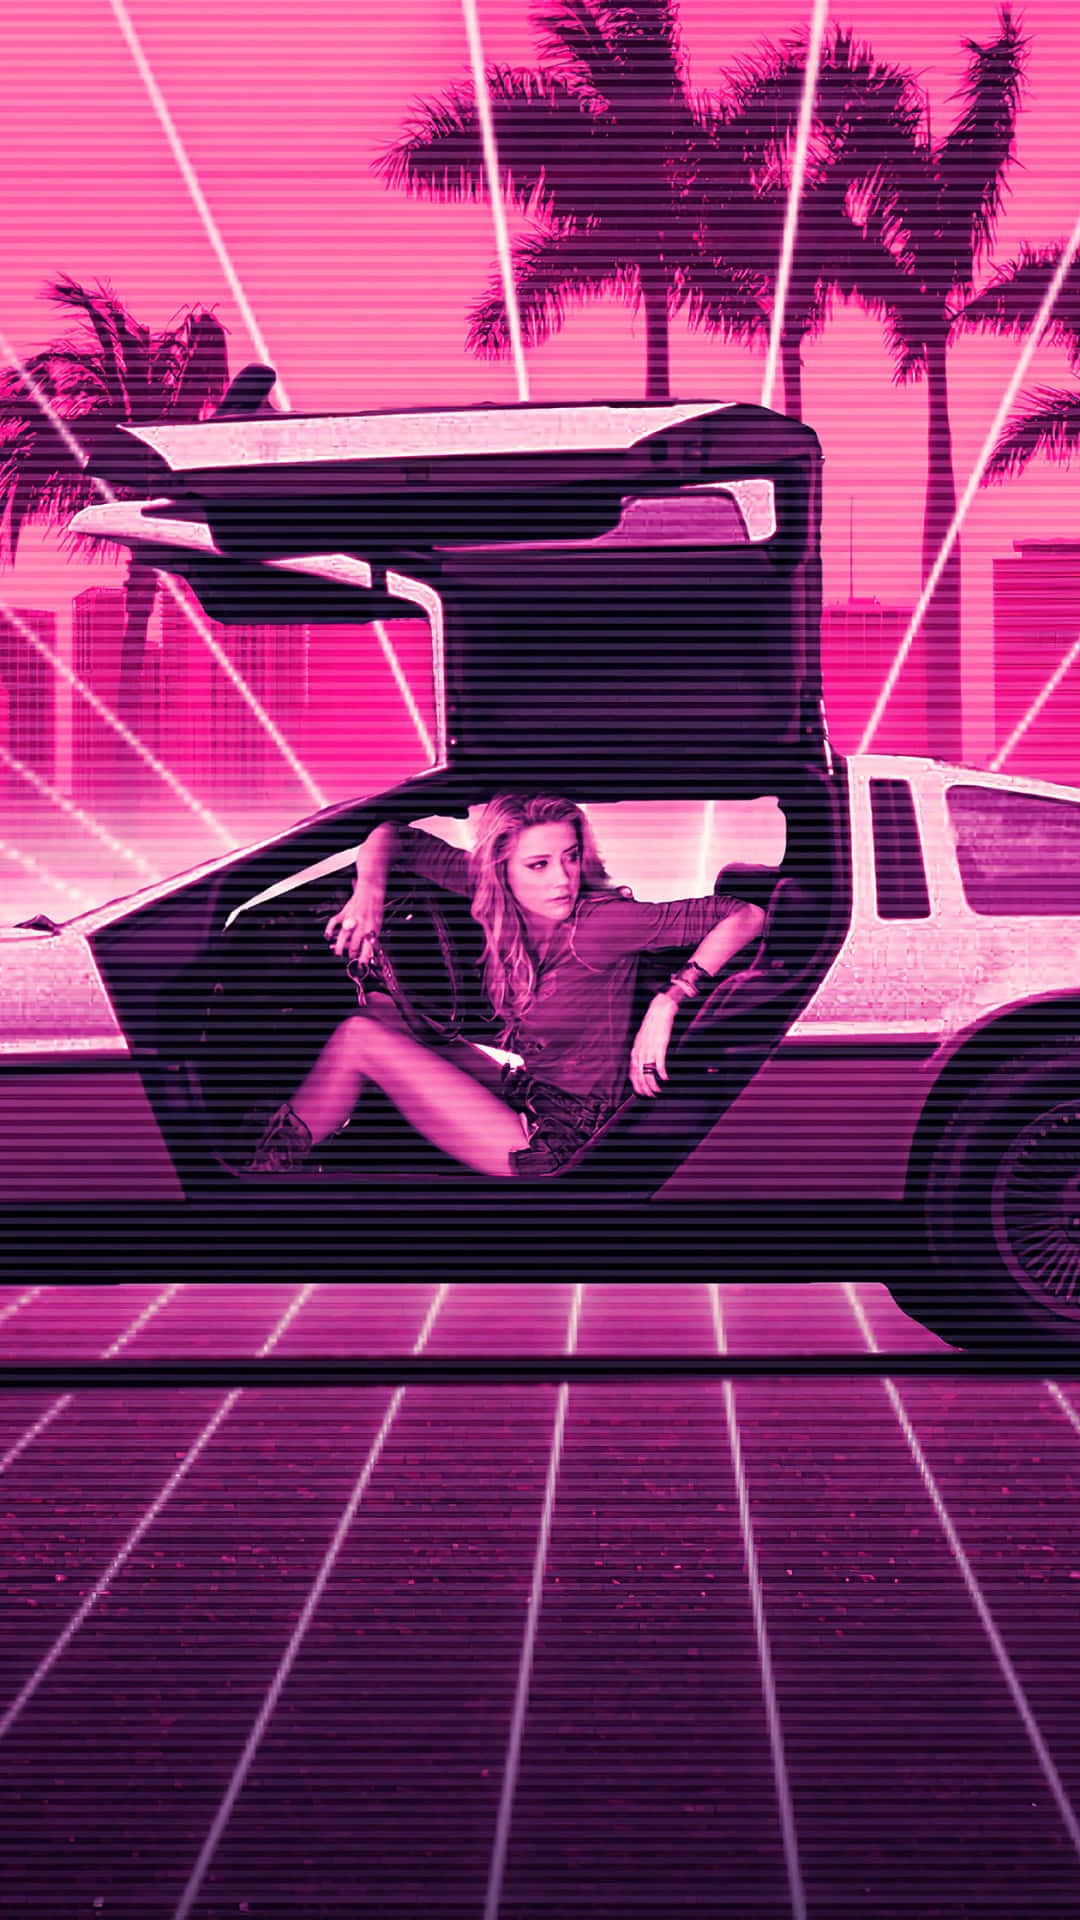 En kvinde sidder i en pink bil med palmer i baggrunden. Wallpaper